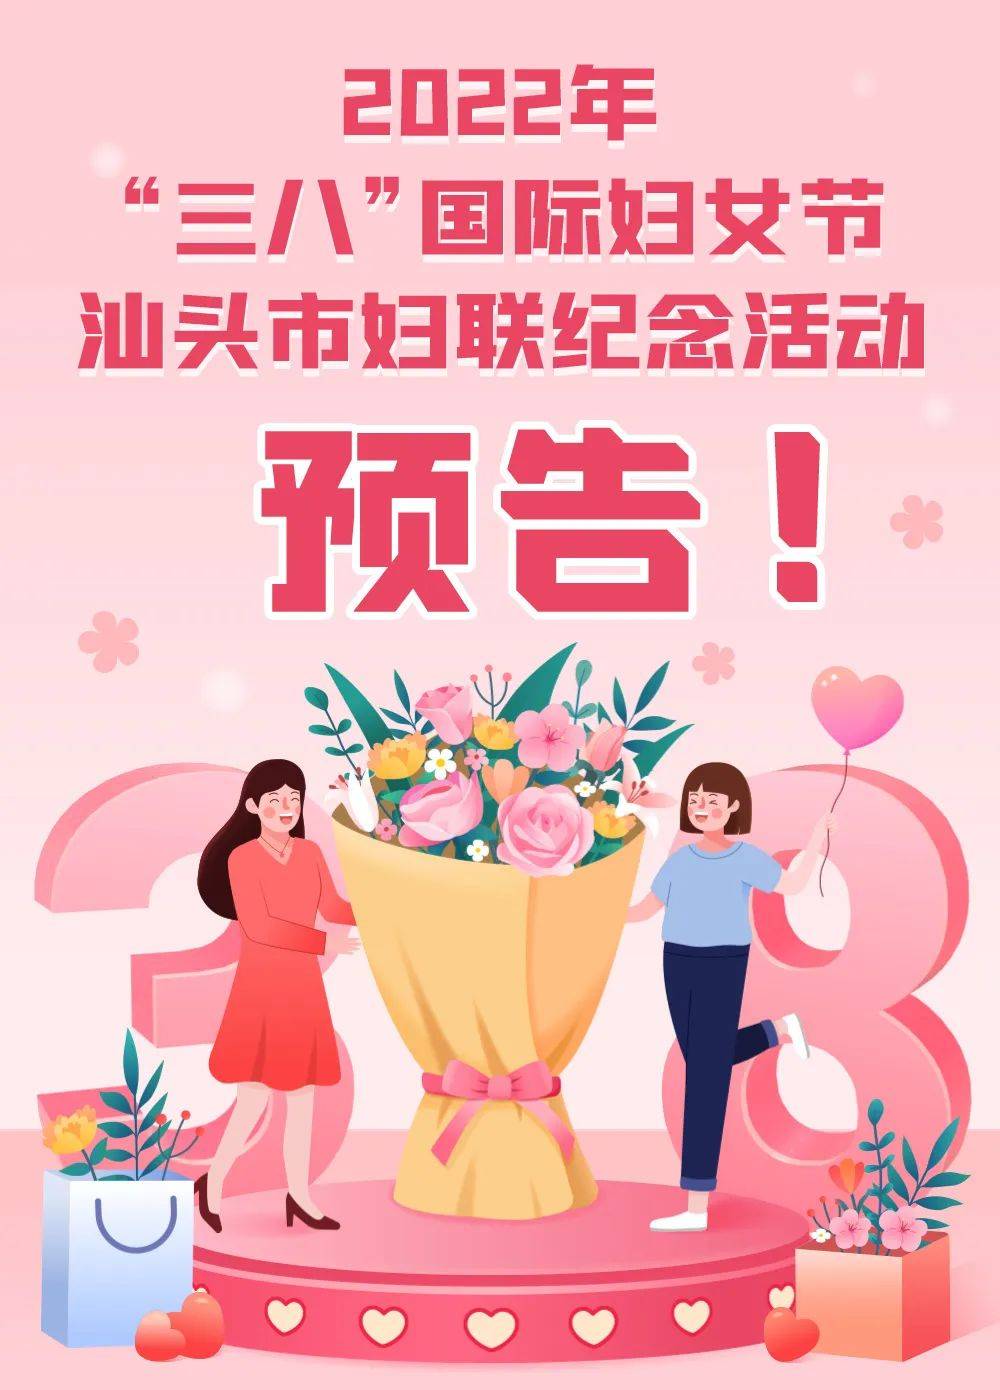 2022年三八国际妇女节汕头市妇联纪念活动新鲜出炉!